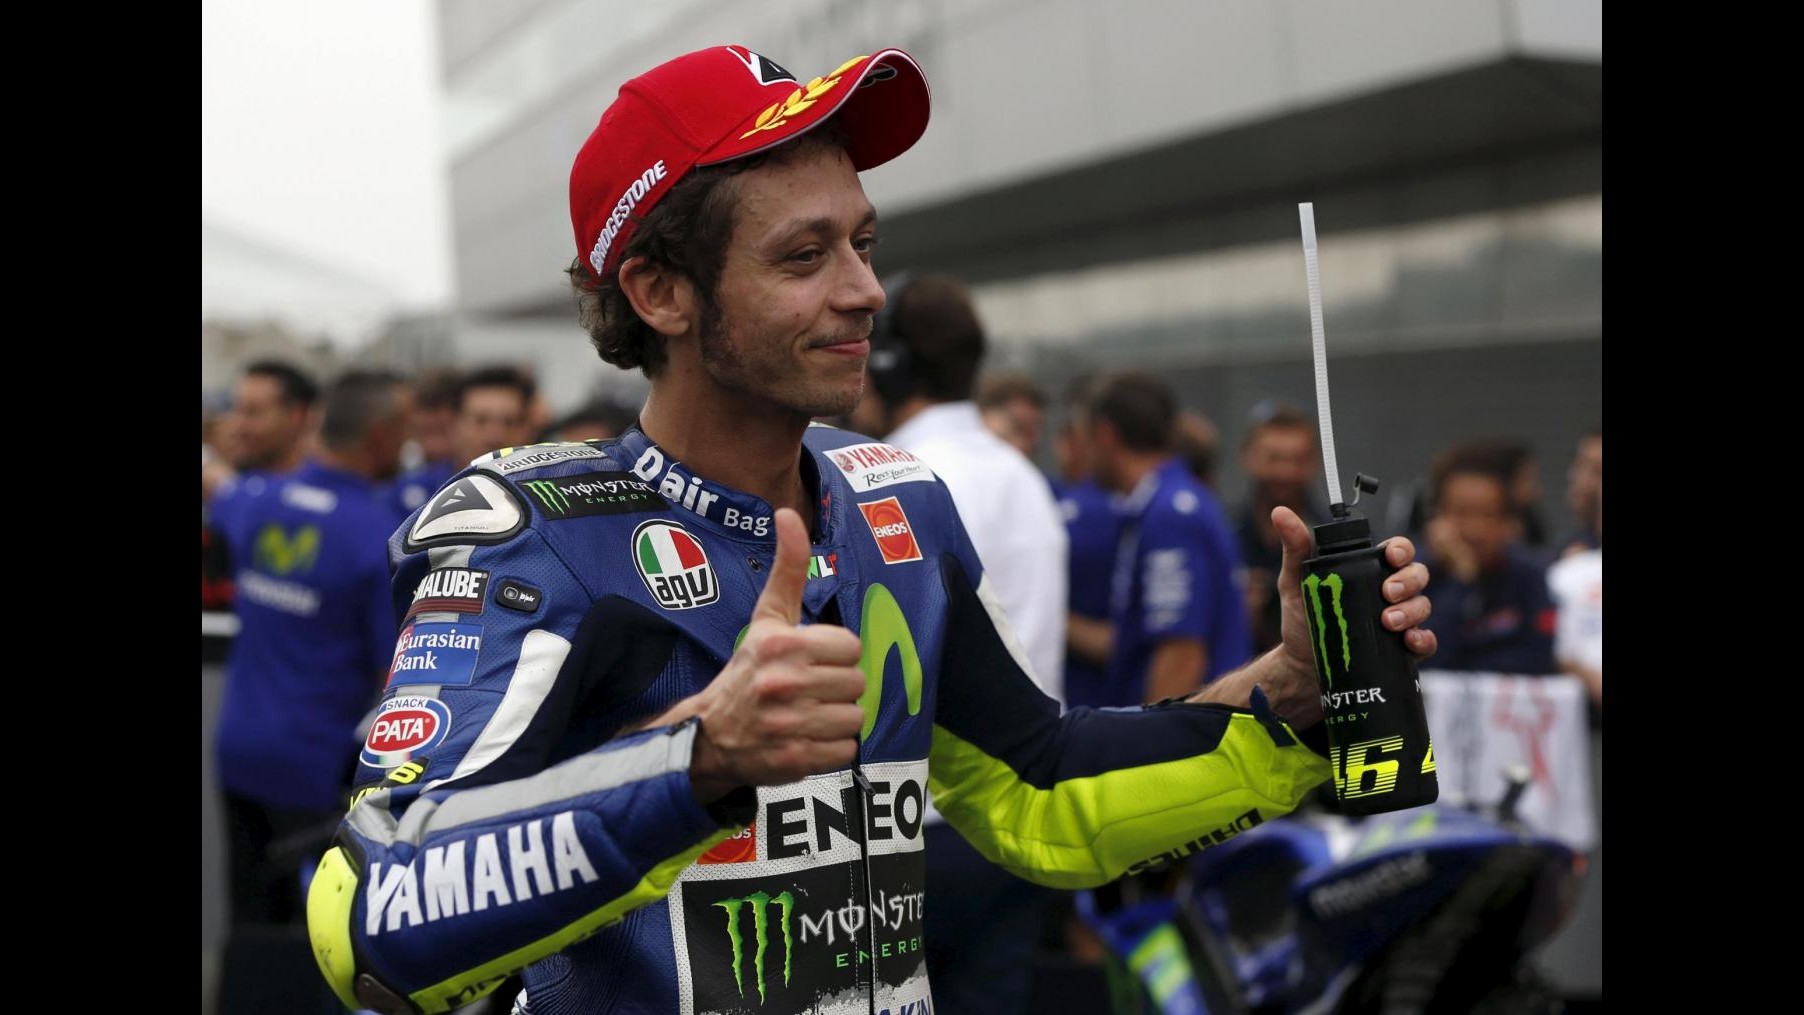 MotoGp, Rossi: Soddisfatto, volevo guadagnare punti su Lorenzo